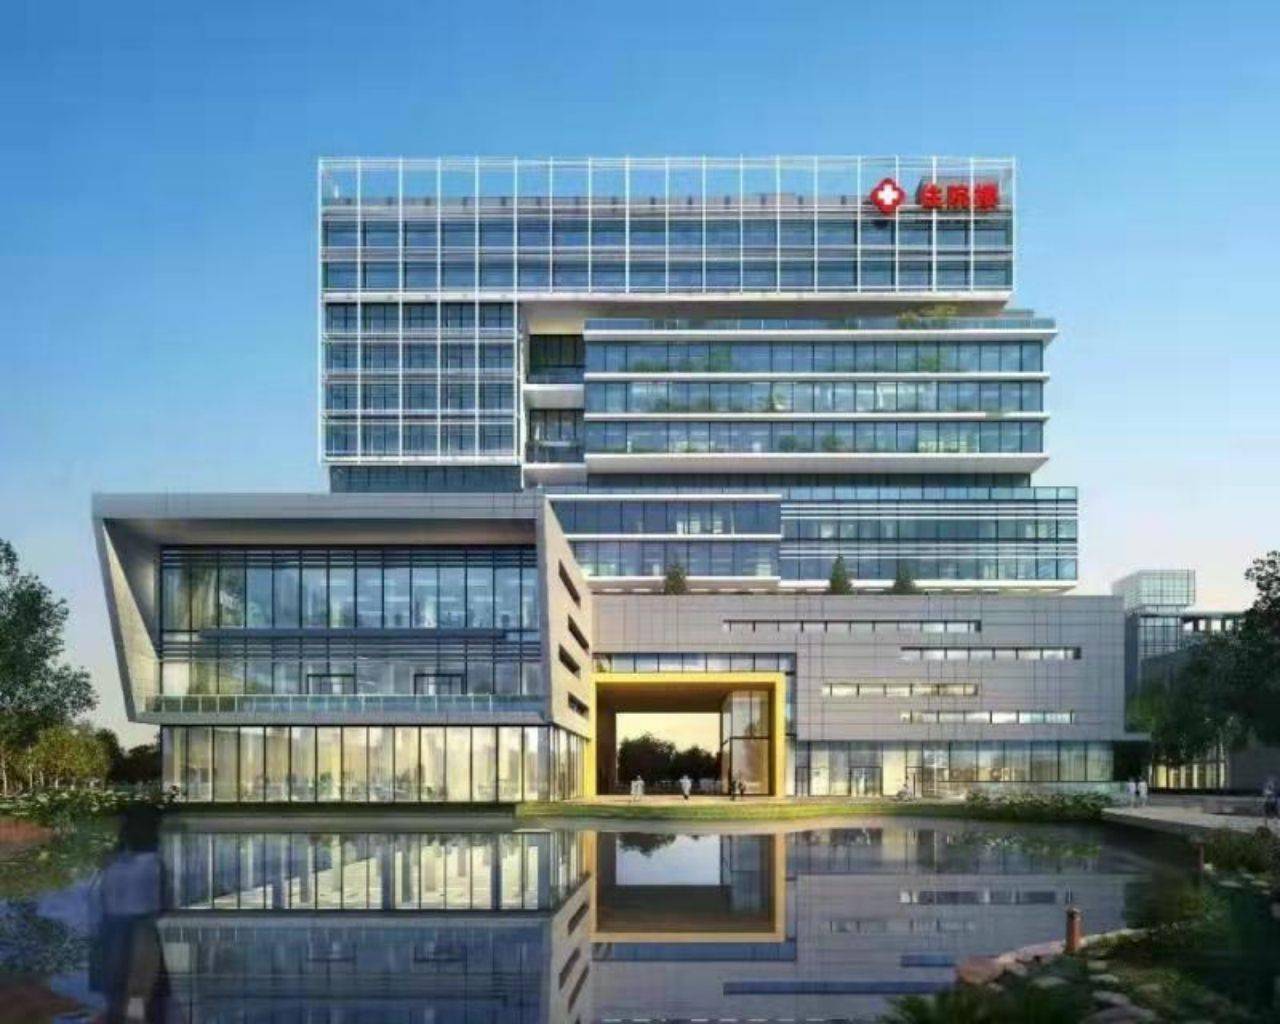 依托市人民医院的优势,目前,谢岗医院正努力打造东莞东部片区医疗中心